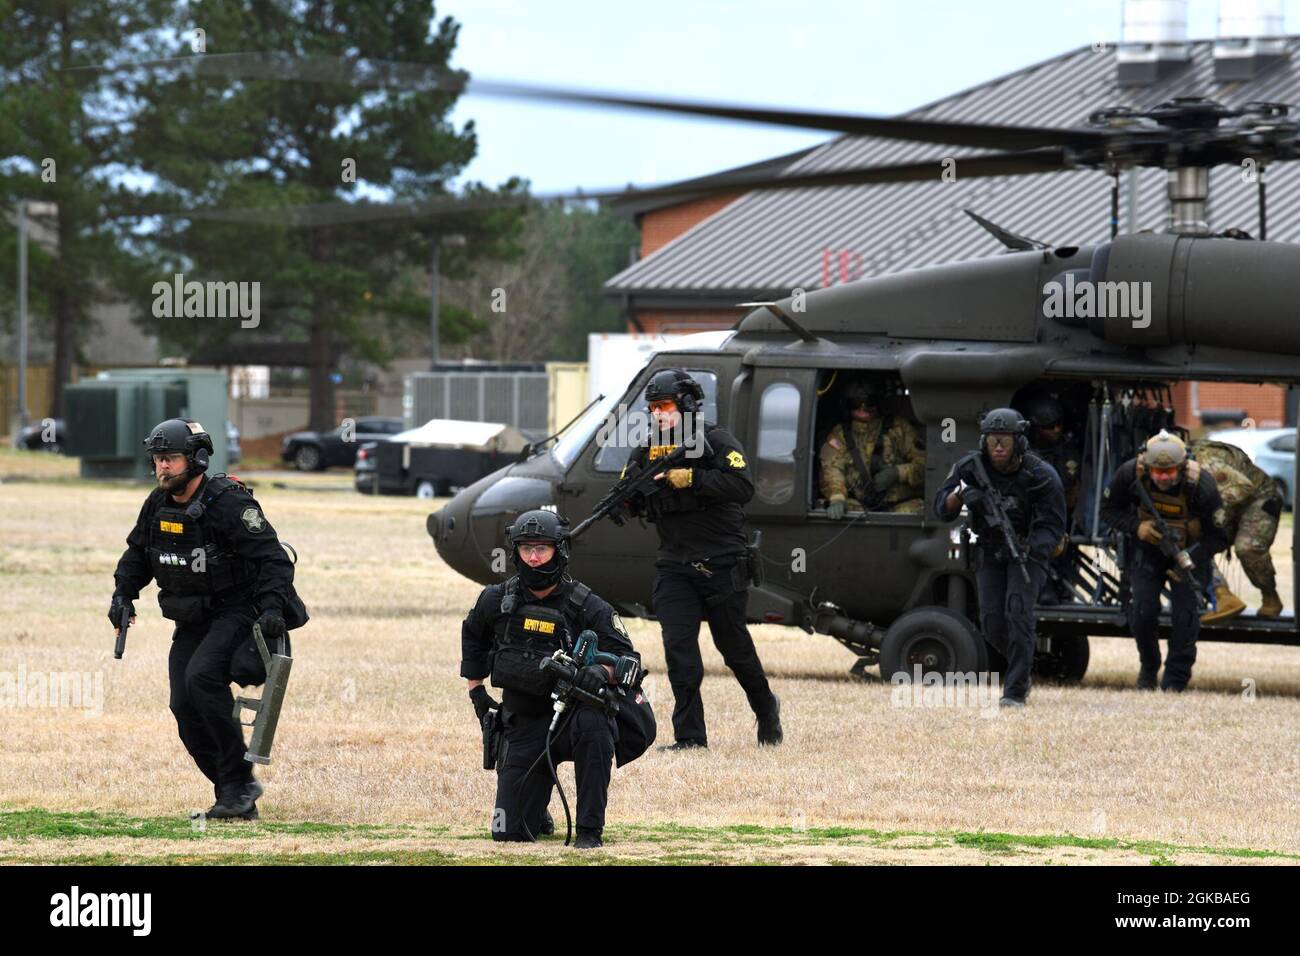 169th Defensores de las Fuerzas de Seguridad del ala de combate se unen con oficiales locales de la policía del Equipo de Respuesta Especial (SRT) del Departamento del Sheriff del Condado de Richland para conducir entrenamiento de tiradores activos entre agencias en la Base Conjunta de la Guardia Nacional McEntire, Carolina del Sur, 2 de marzo de 2021. LOS helicópteros utilitarios de elevación media de Black Hawk UH-60 de la compañía A del batallón de aviación 1-111st de Carolina del Sur, transportaron el SRT para unirse a los defensores de la base de la Fuerza Aérea de EE.UU. Para participar en amenazas de ejercicios de disparos activos, demostrando capacidades de respuesta rápida. Foto de stock